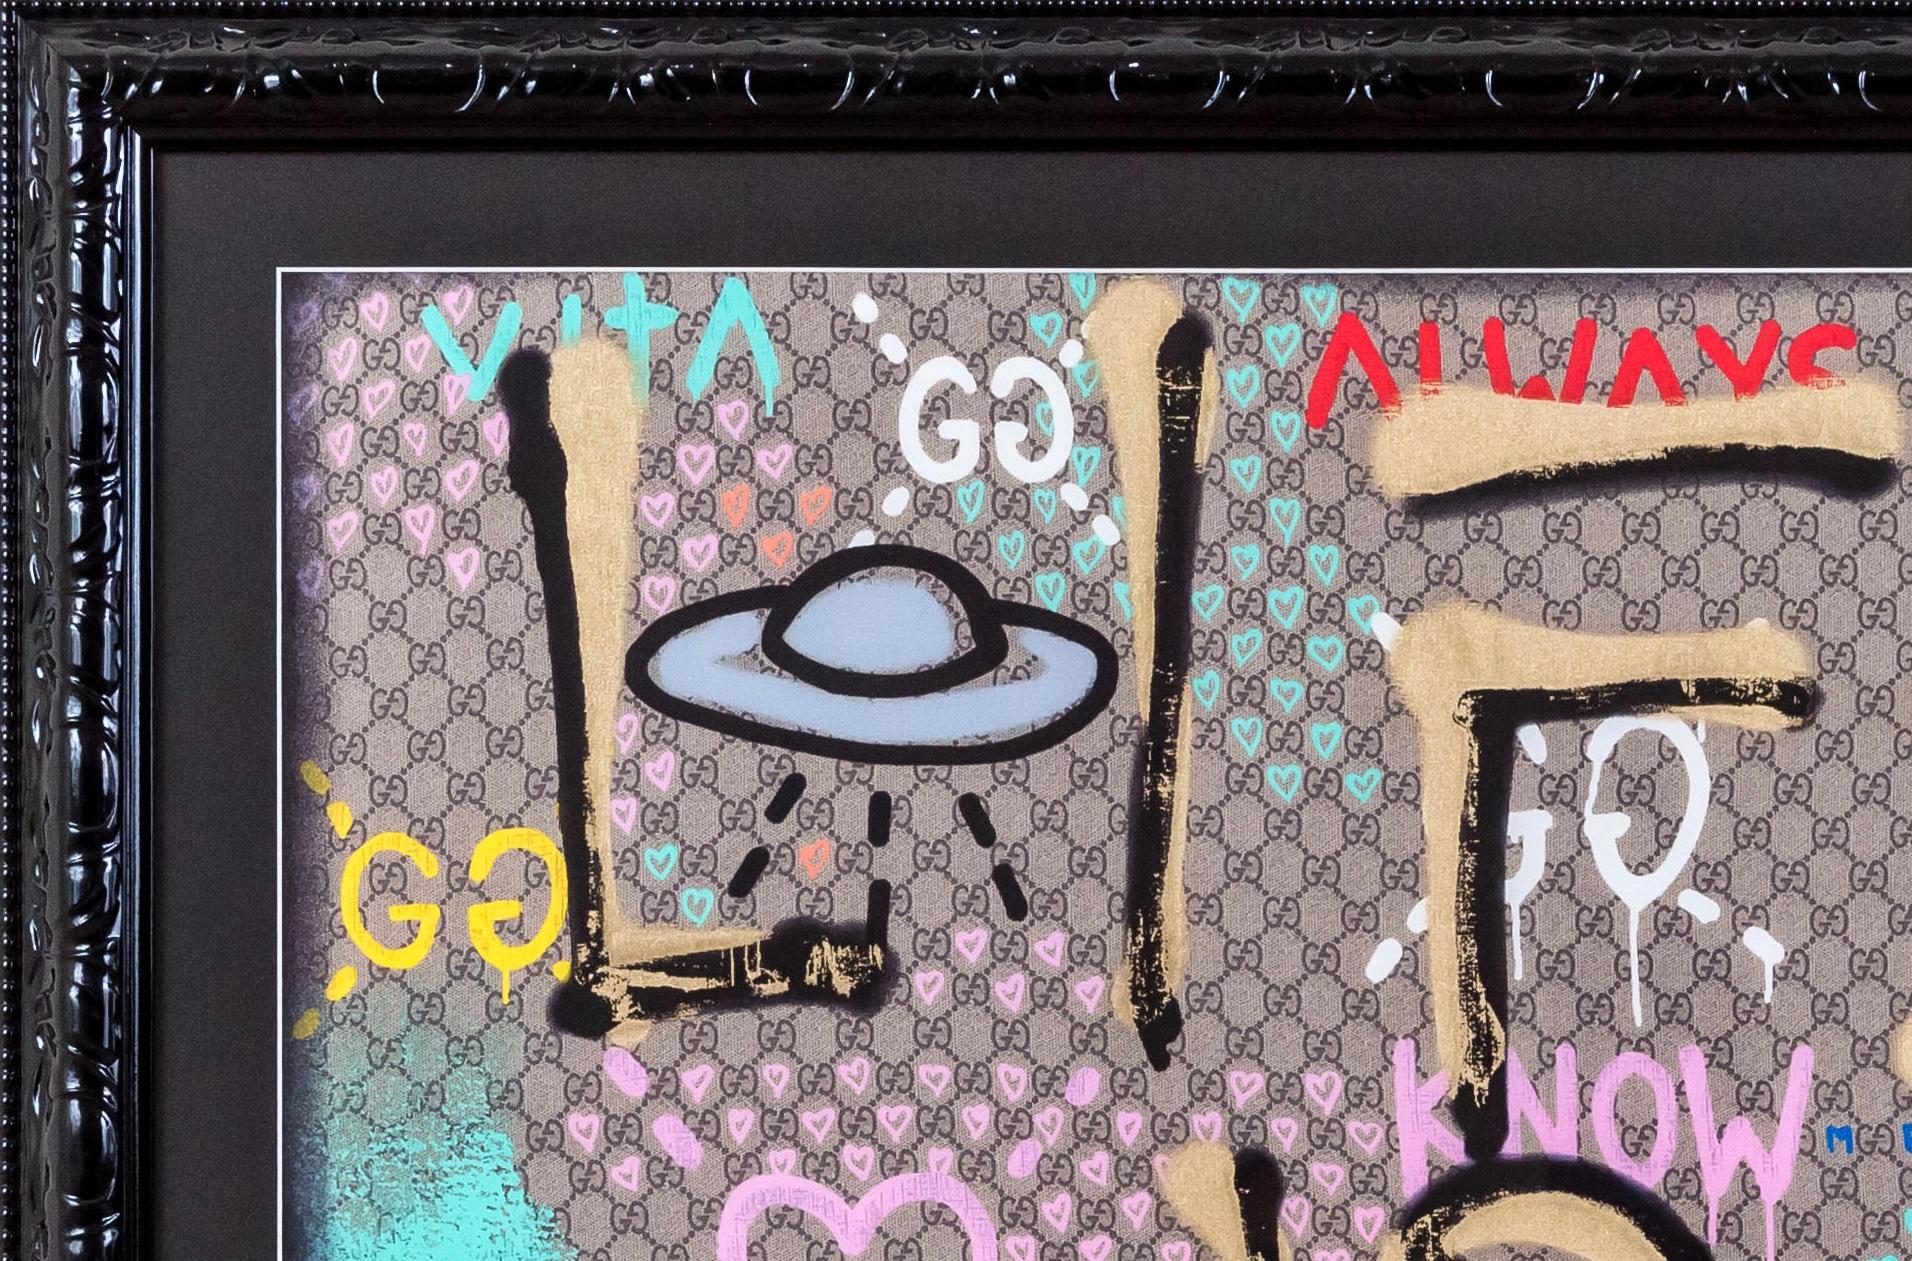 GUCCI - Life is Gucci - Logo - graffiti art - street art - gucci logo - abstract - Abstract Mixed Media Art by Unknown